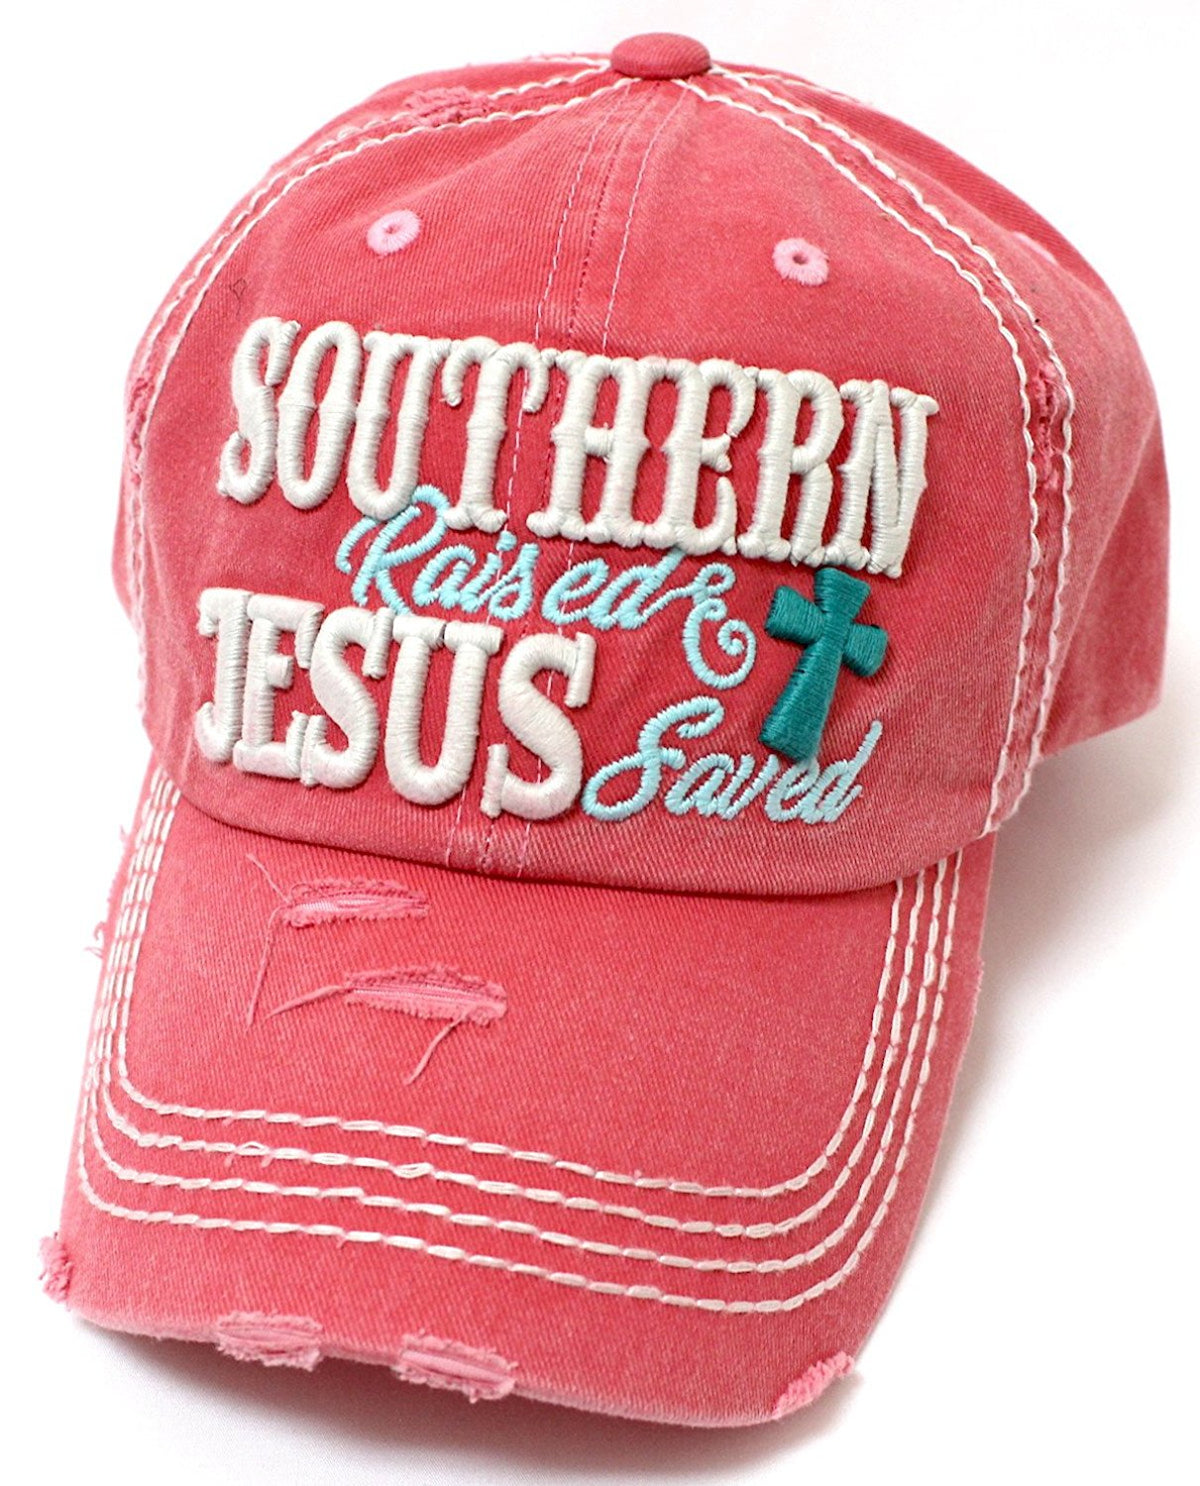 CAPS 'N VINTAGE Women's Southern Raised & Jesus Saved Cross Embroidery Hat - Caps 'N Vintage 